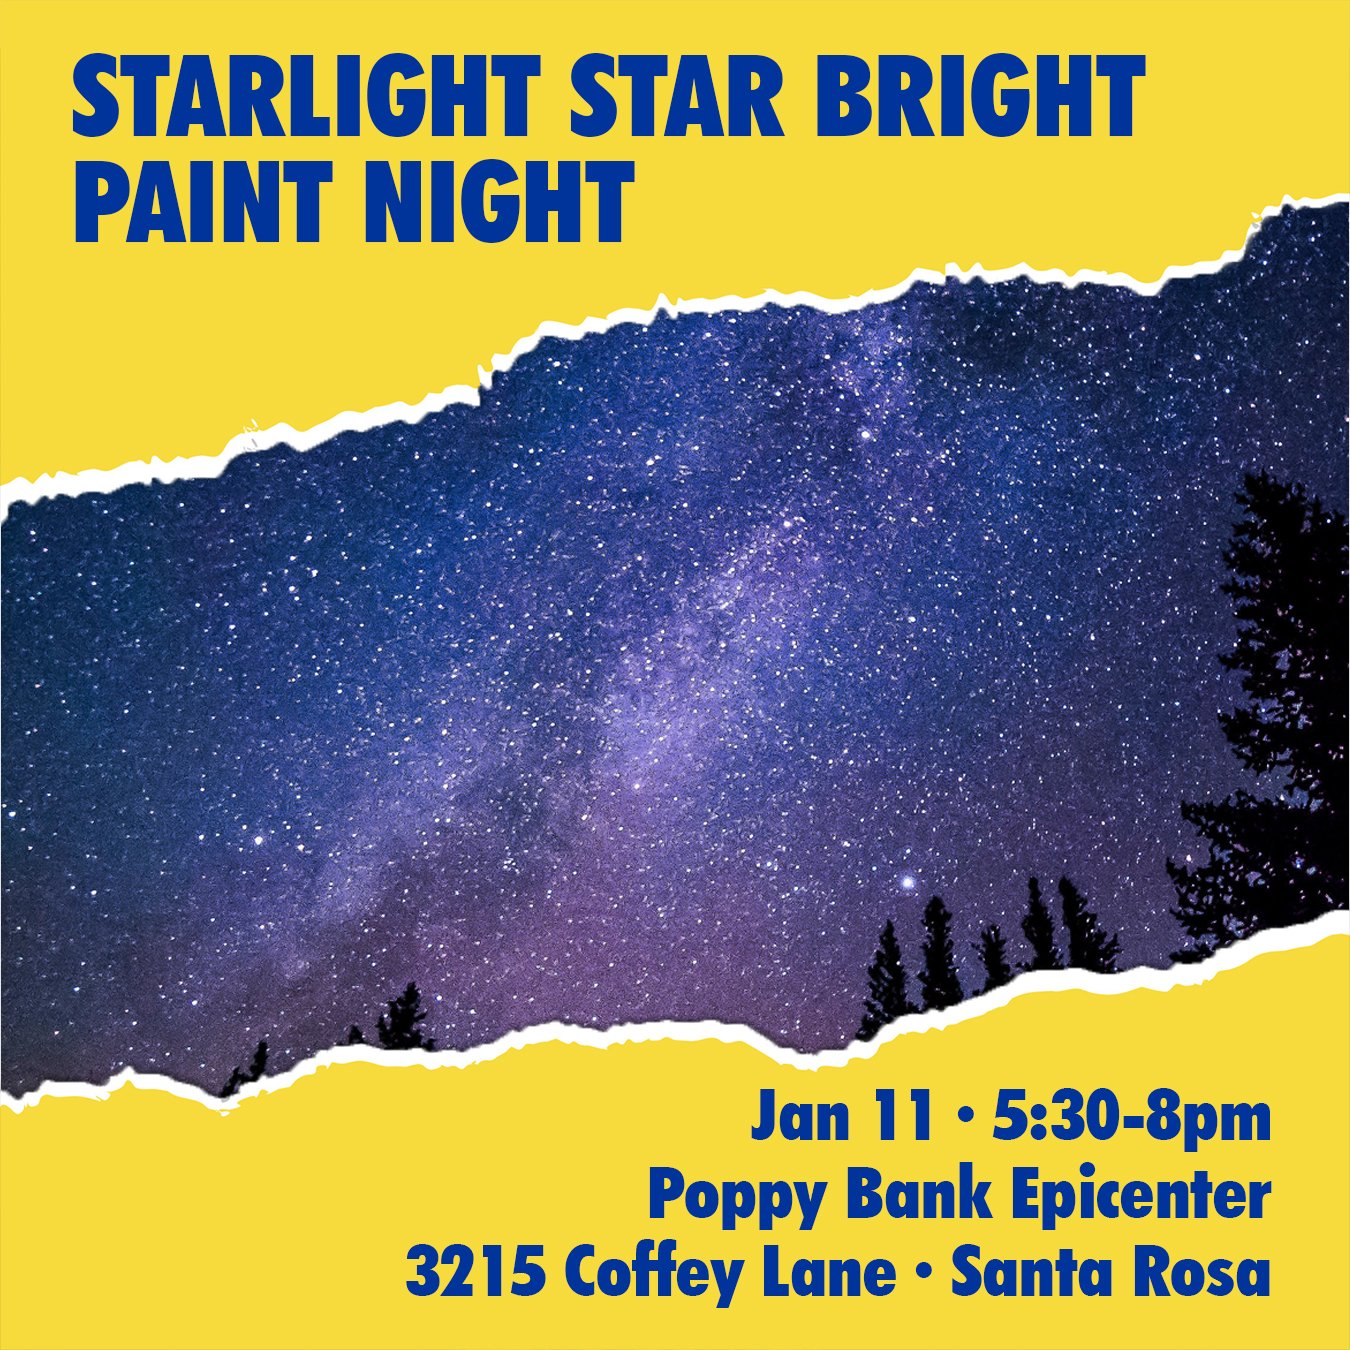 Starlight Star Bright Paint Night!